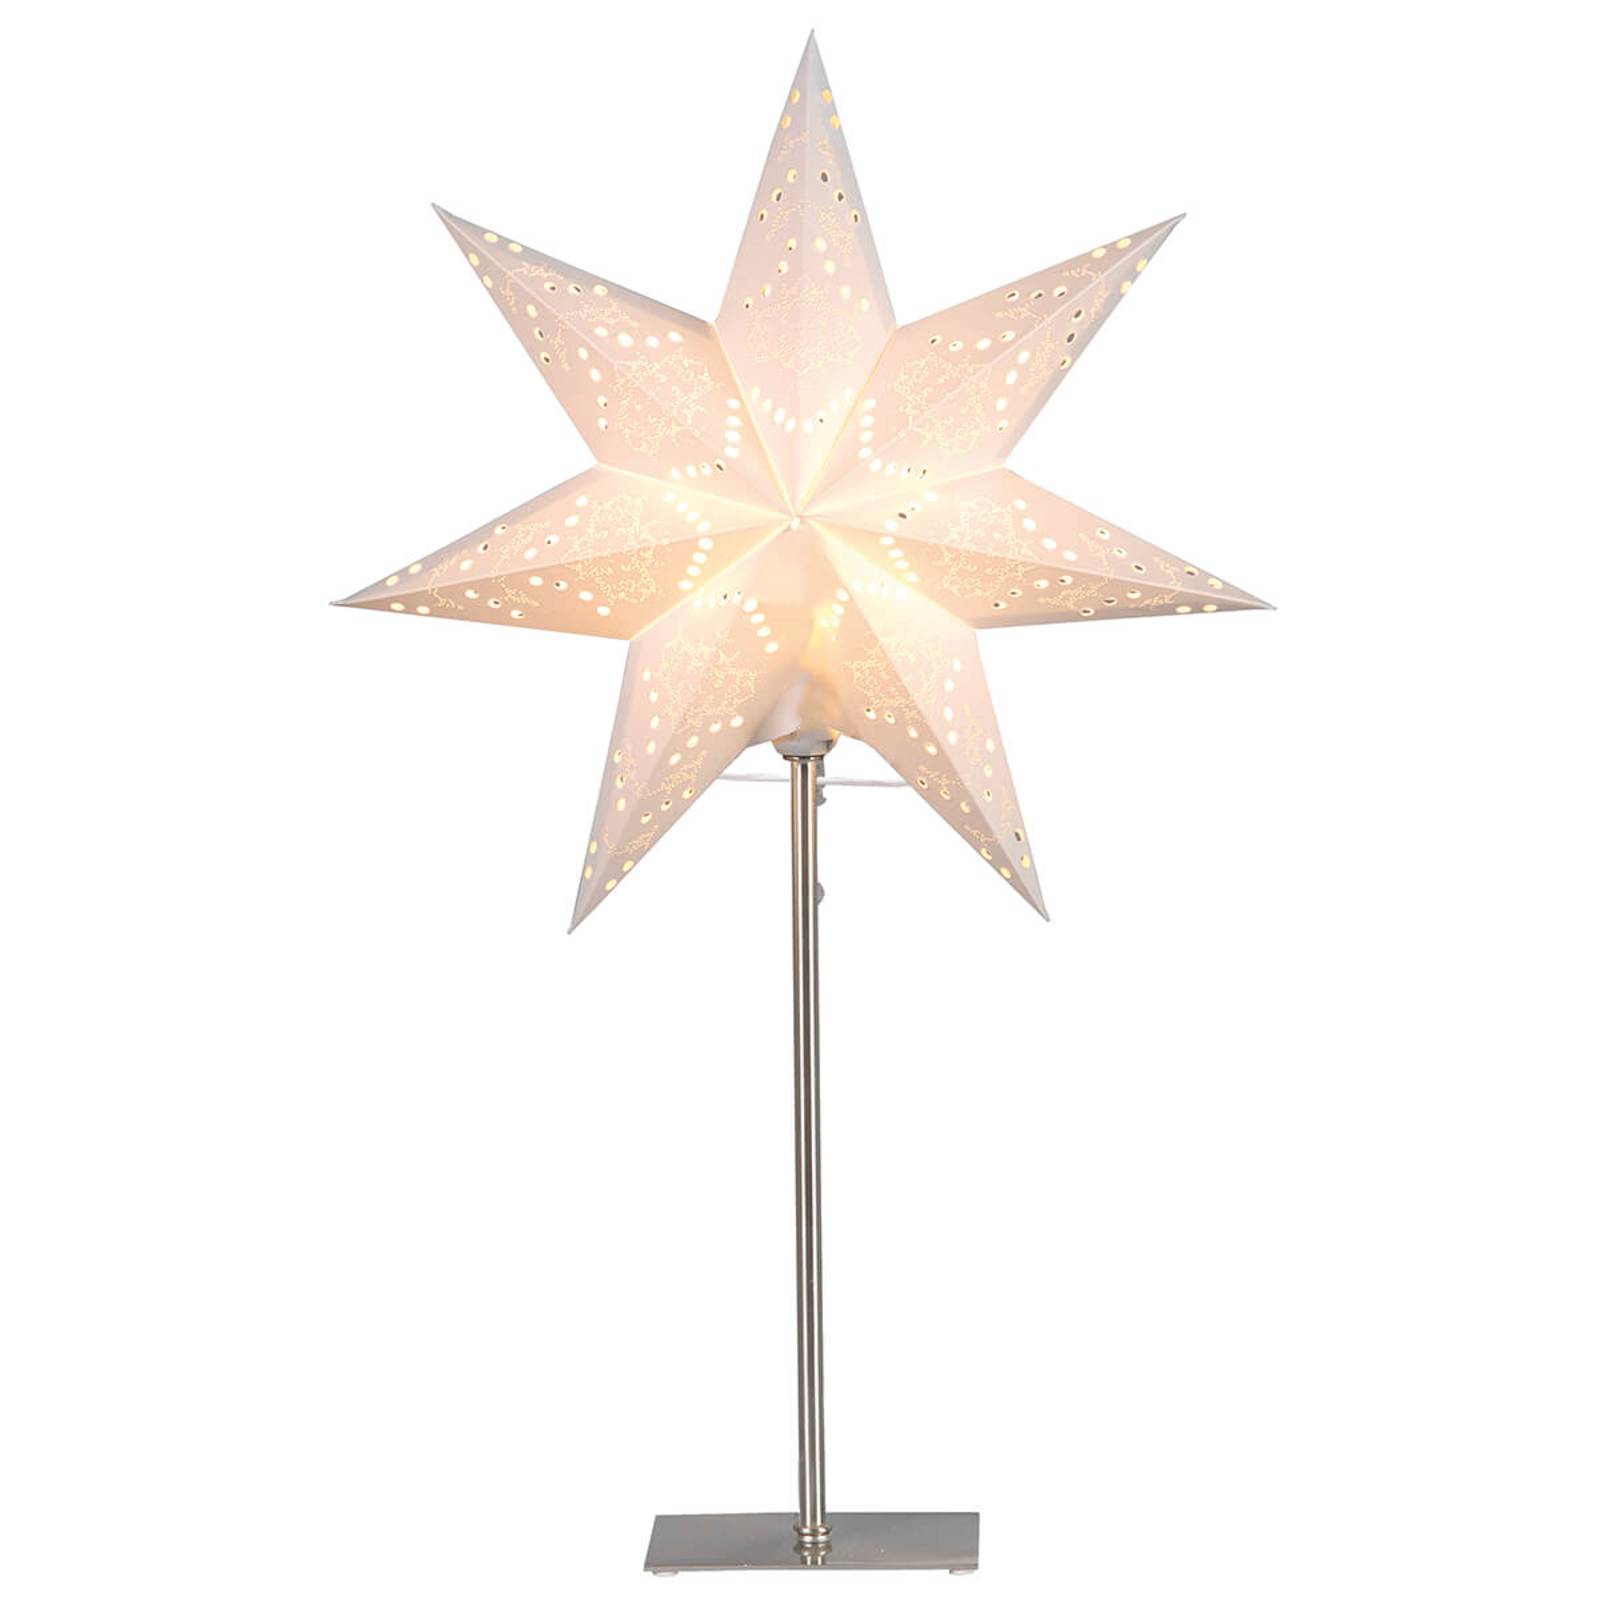 STAR TRADING Se stojanem - papírová hvězda Sensy